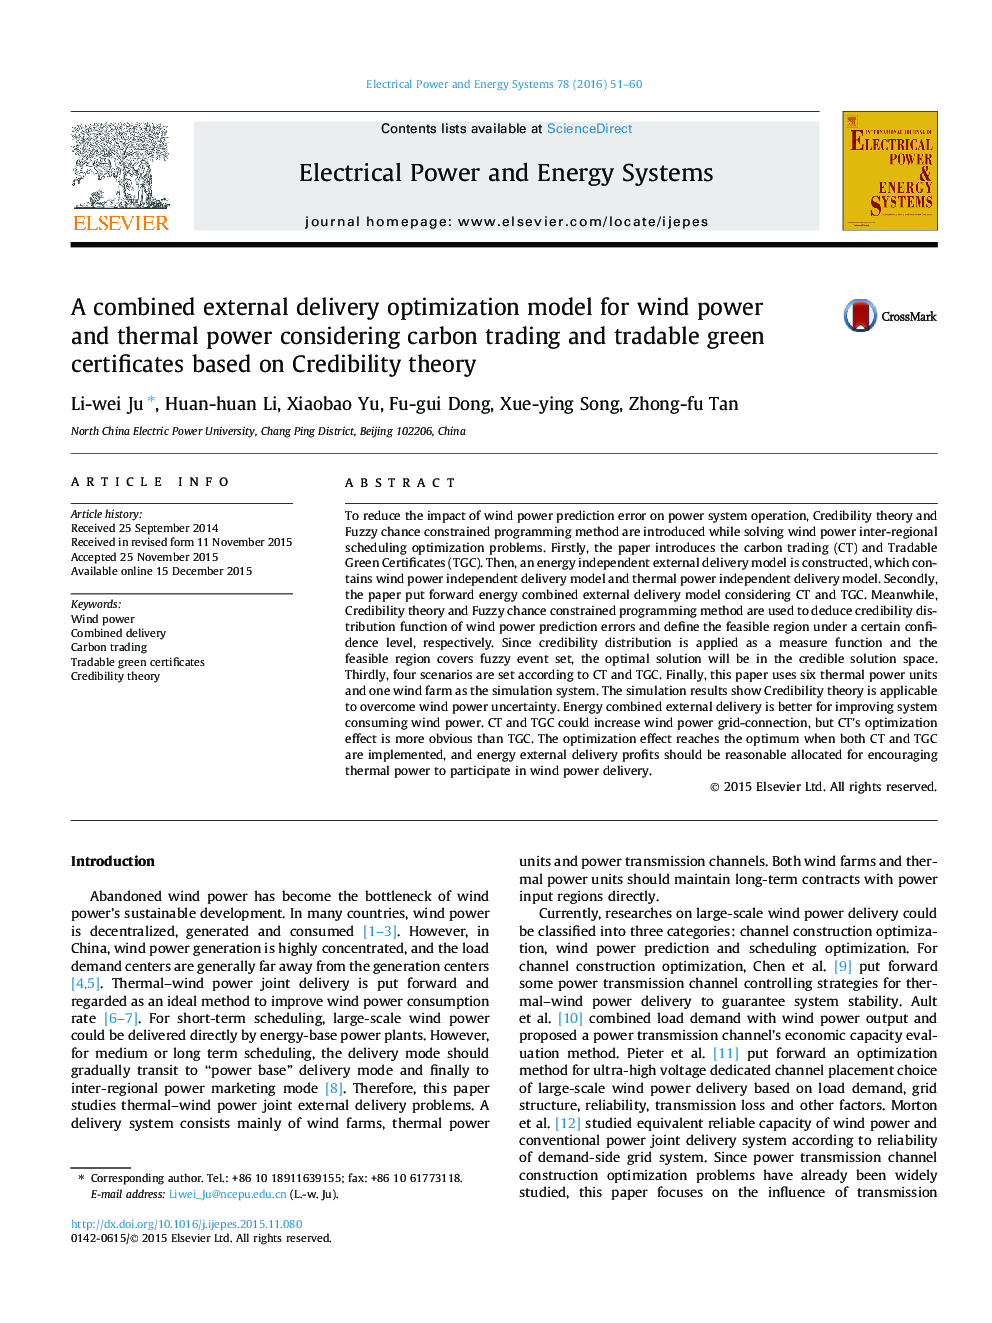 یک مدل بهینه سازی تحویل بیرونی خارجی برای قدرت باد و قدرت حرارتی با توجه به تجارت کربن و گواهی های سبد معامله گر بر اساس نظریه اعتبار 